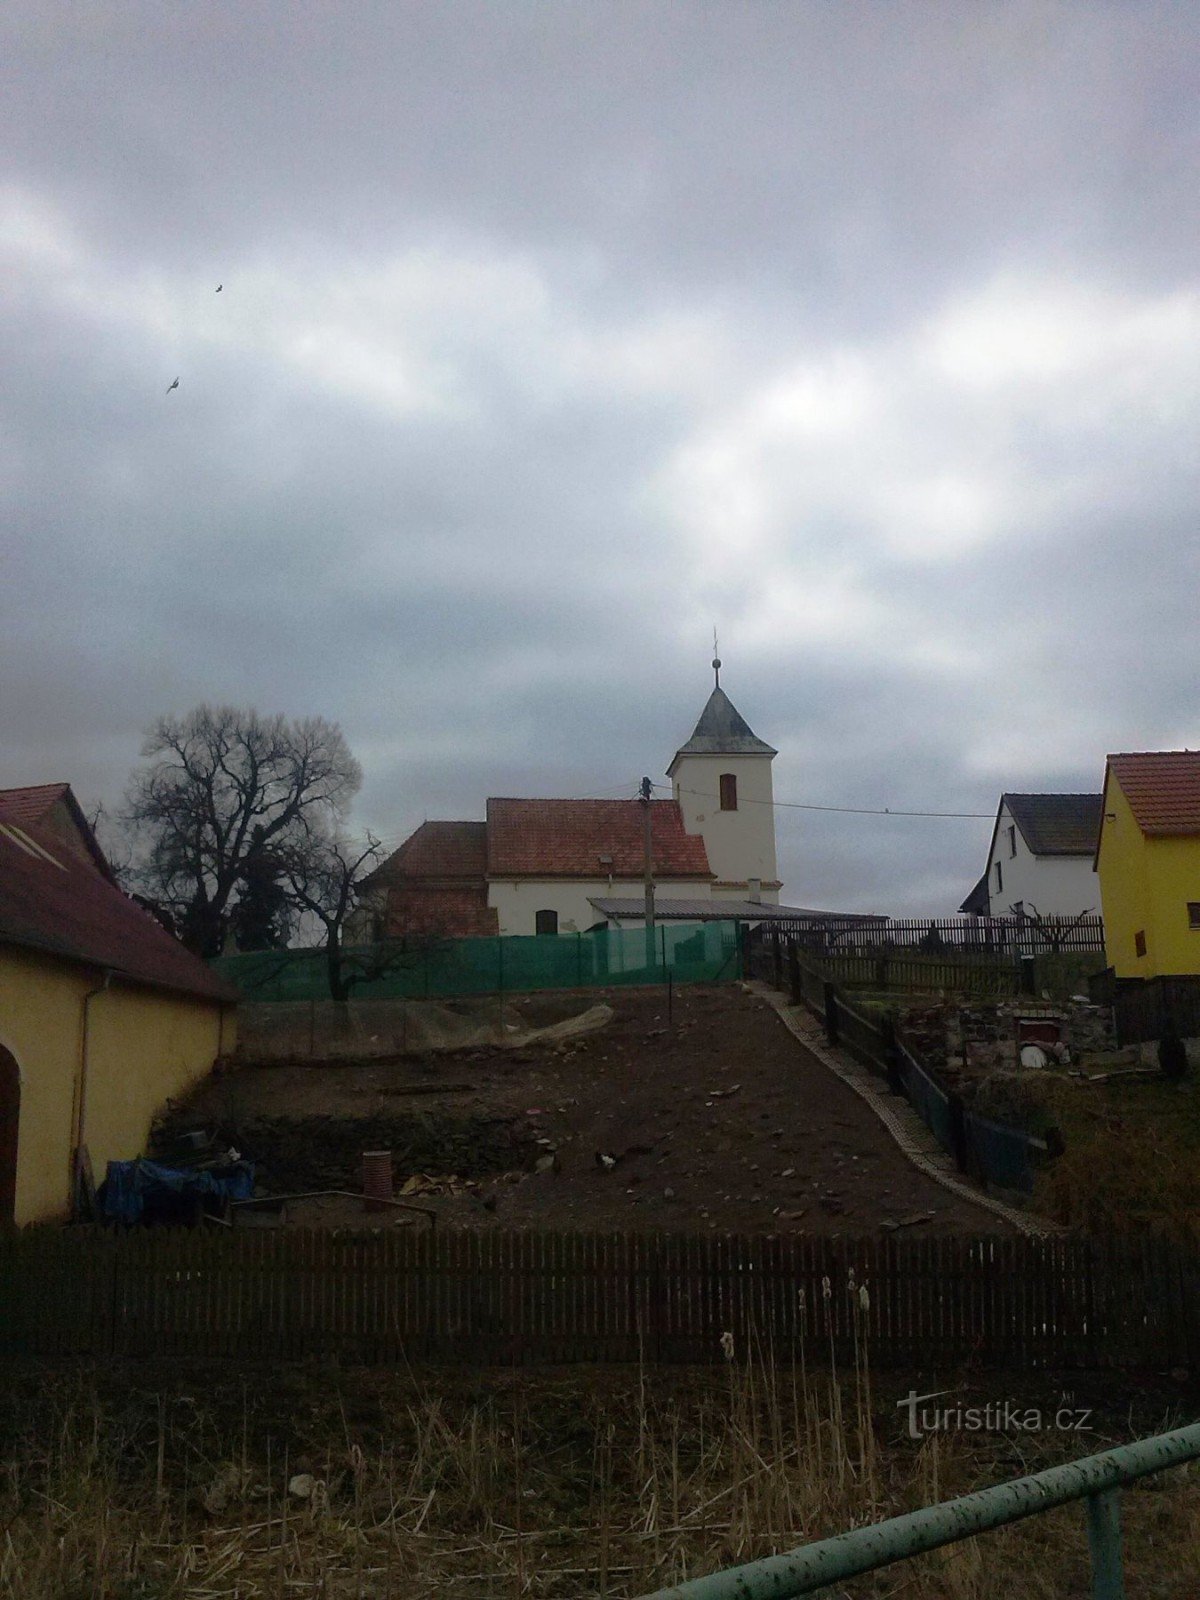 1. Brozánky - Nhà thờ St. Václava - nhìn từ trạm dừng xe lửa